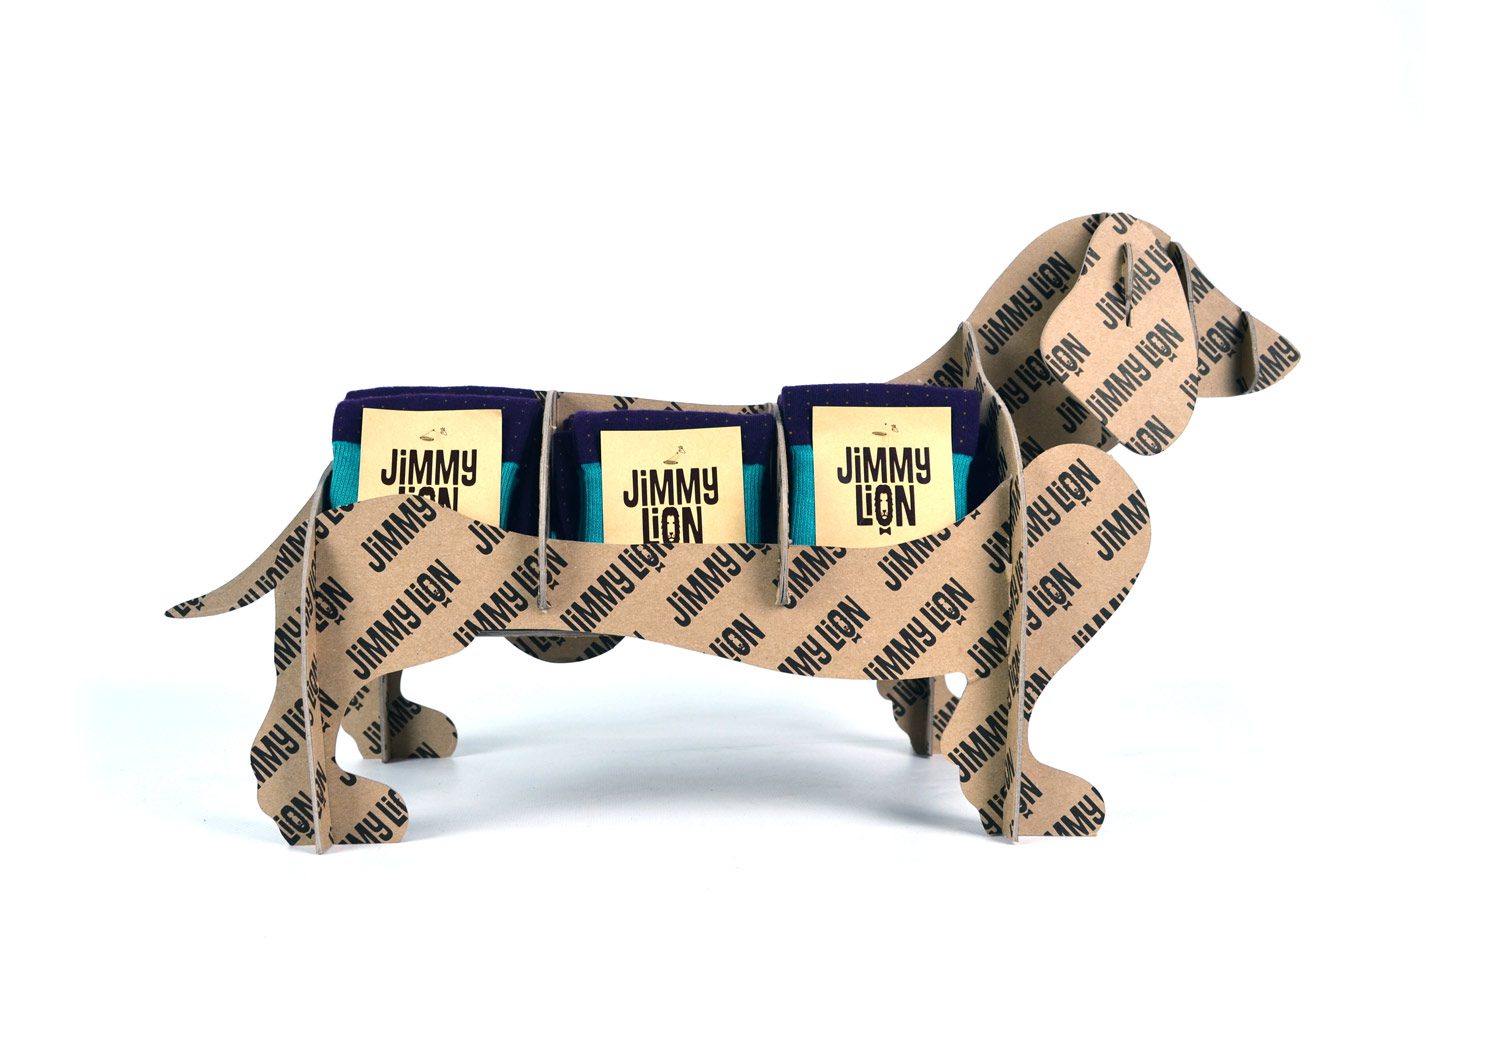 expositor de producto sobremesa carton jimmy lion cartonlab calcetines